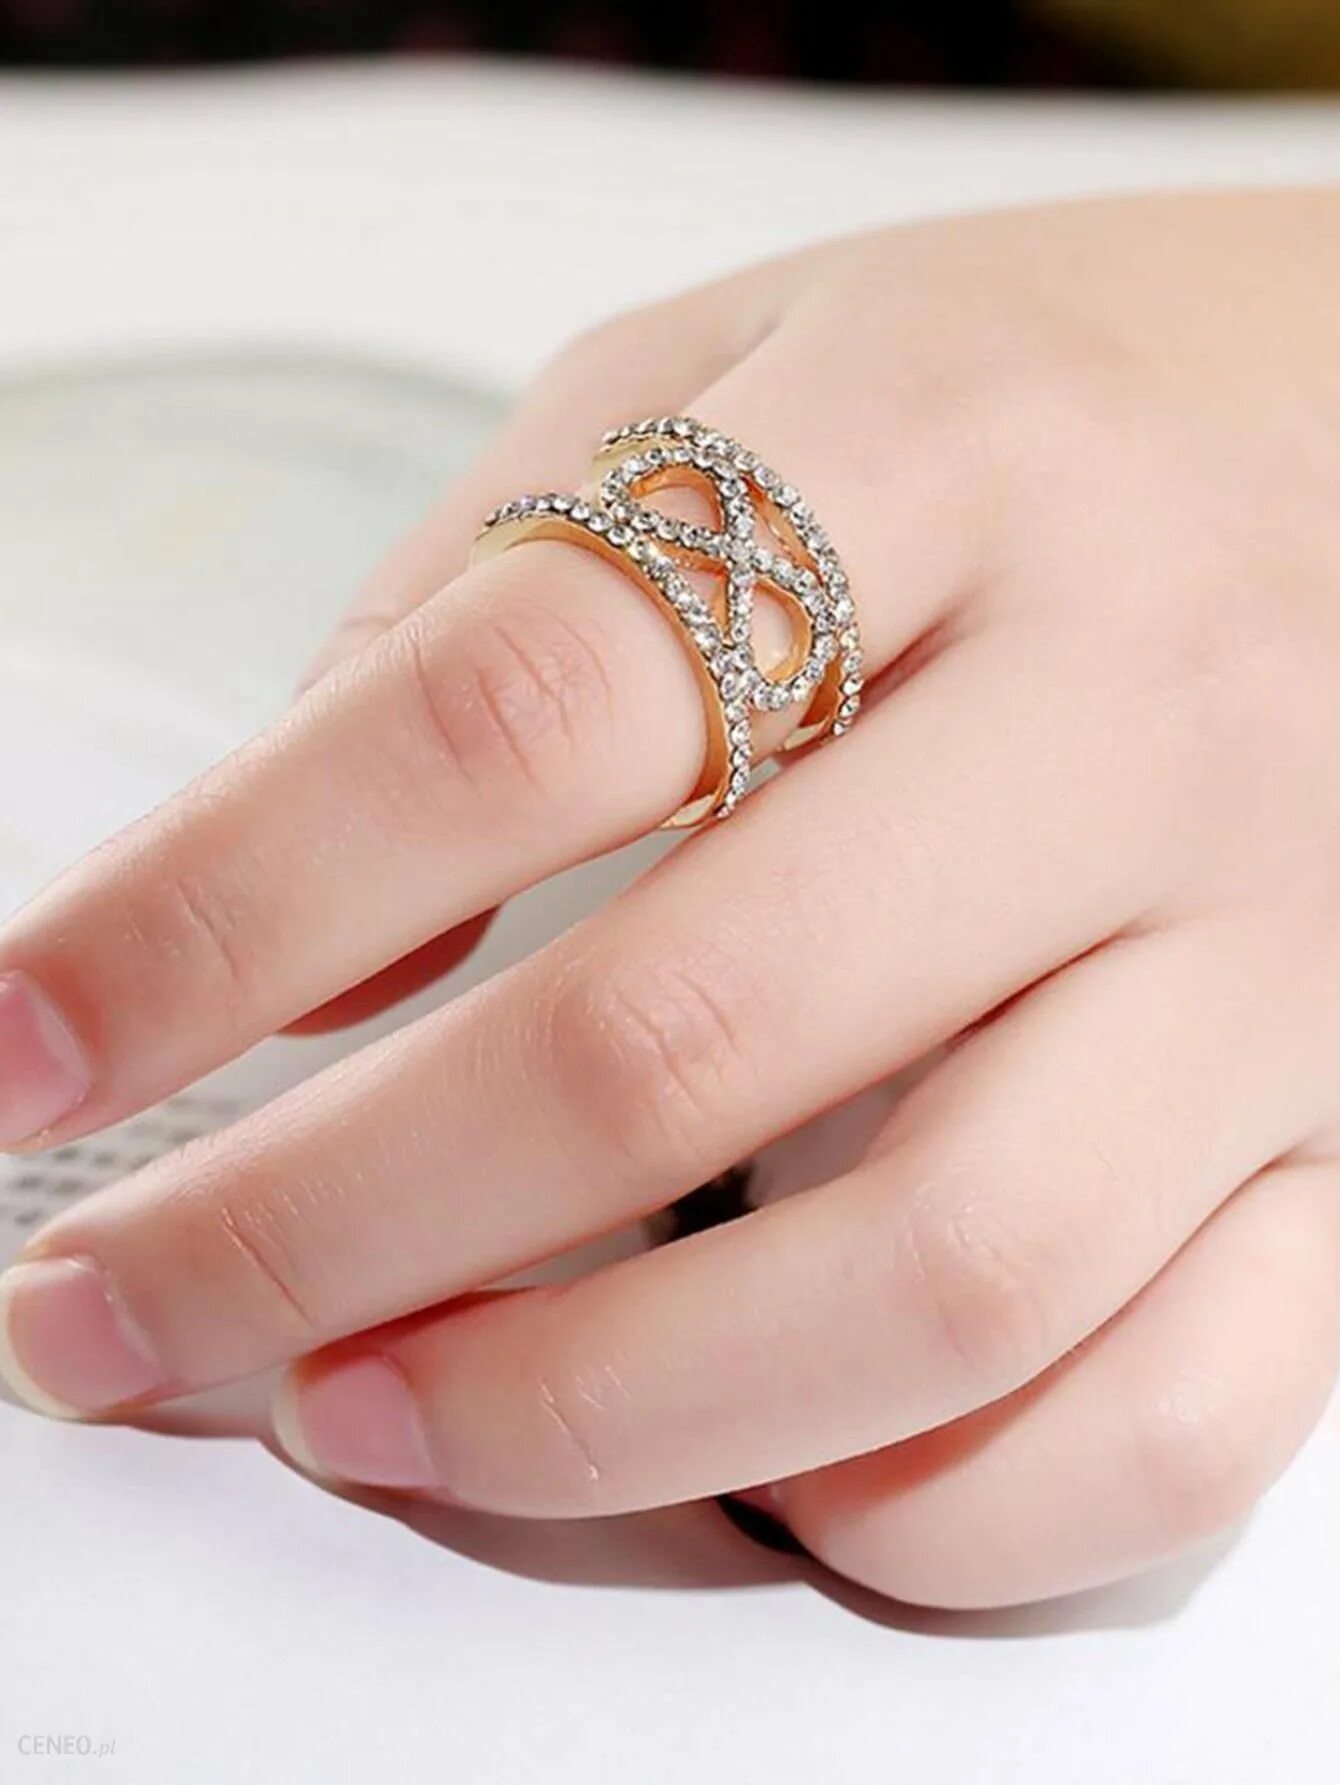 Красивое кольцо на палец. Красивые кольца. Кольцо женское. Красивые женские кольца. Модные женские кольца.